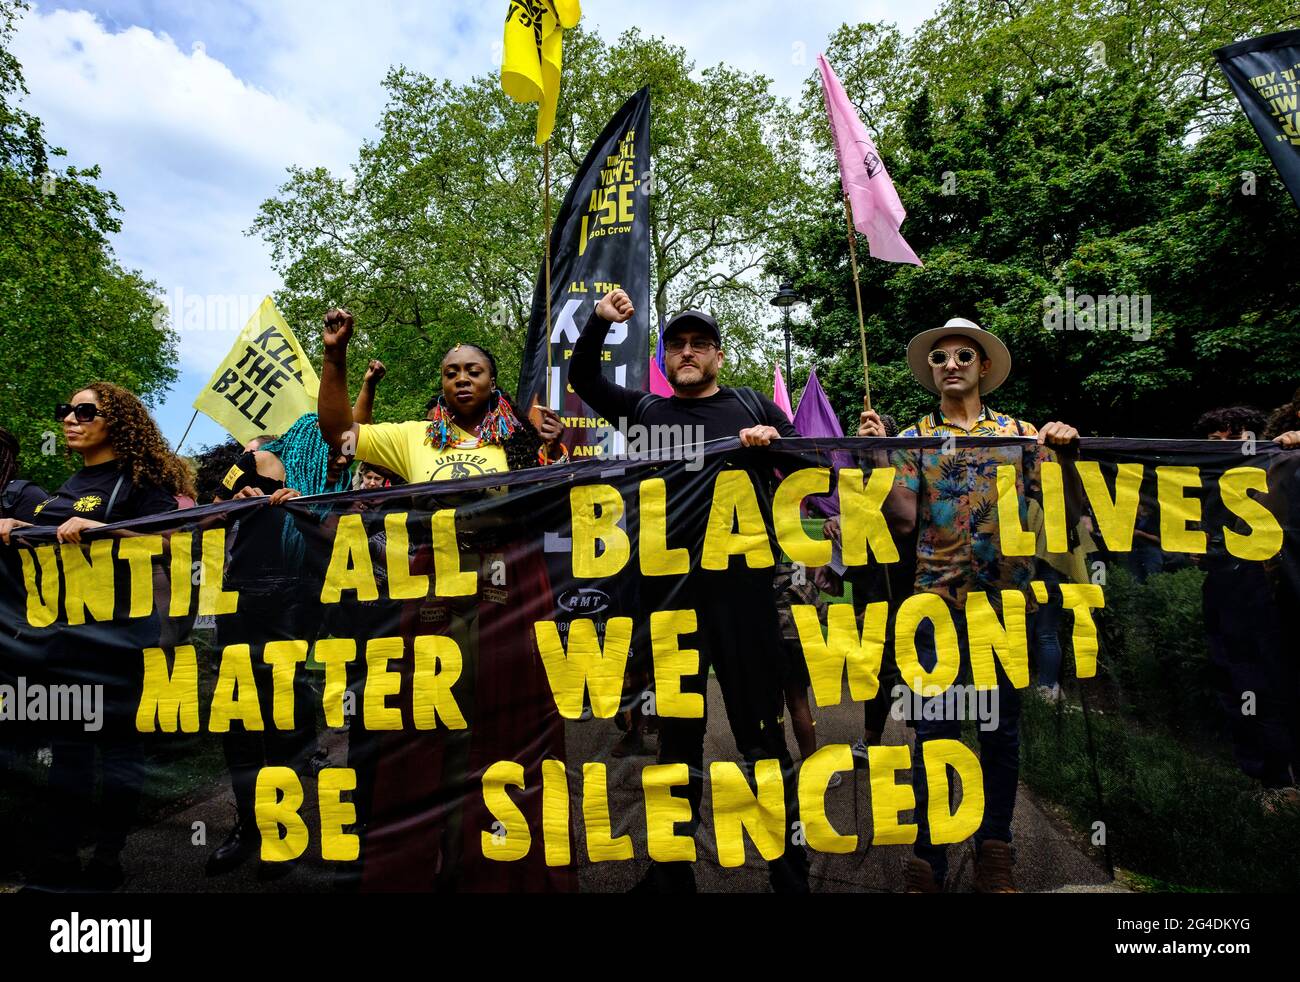 La Black Lives è un problema che protestava lungo la dimostrazione di Side Kill the Bill, guidata dal ramo britannico della Black Lives Matter, combattendo specificamente contro l'uso del potere della polizia come mezzo per tacere le voci nere, in risposta ai recenti assassinii di neri da parte della polizia. Foto Stock